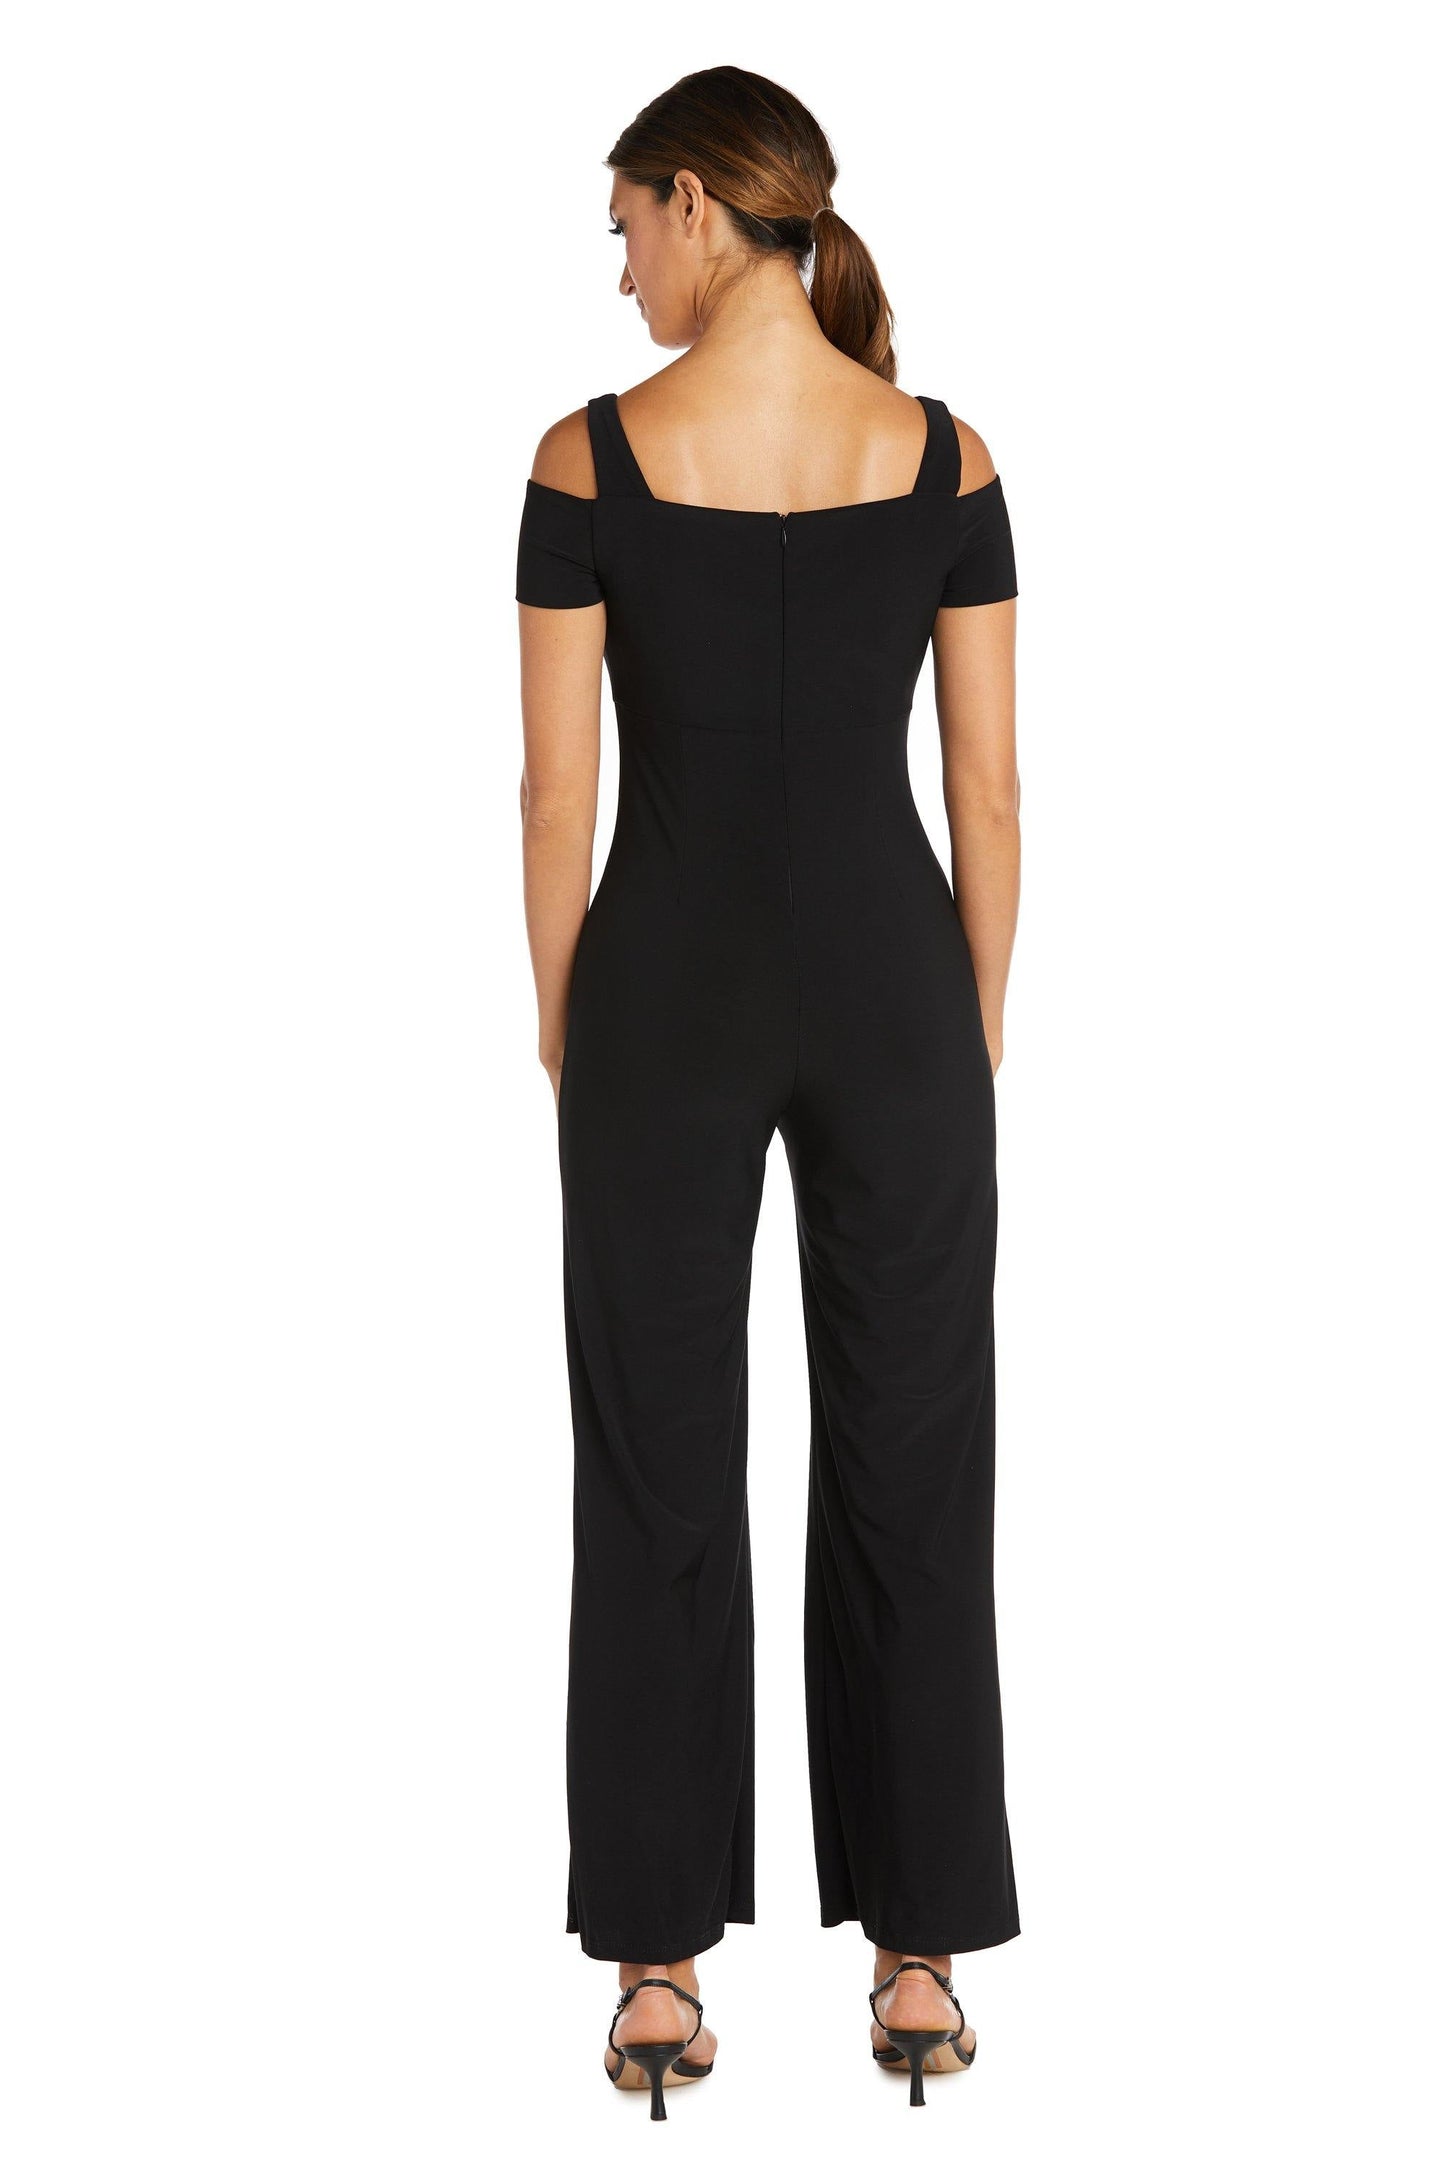 Nightway Formal Off Shoulder Petite Jumpsuit 21518P - The Dress Outlet